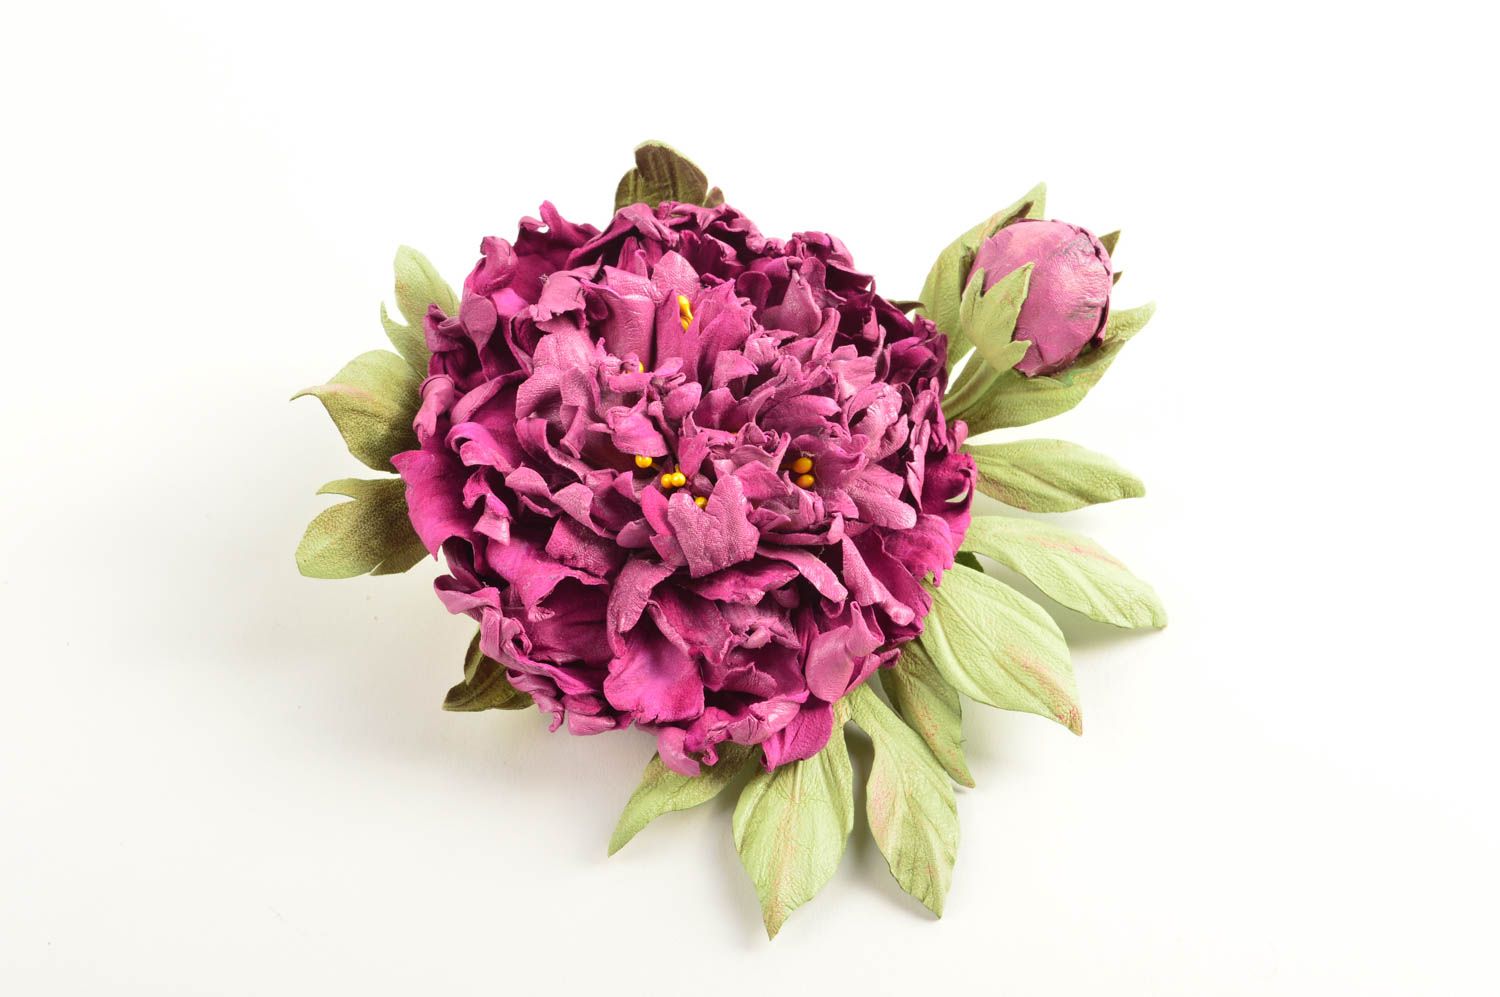 Авторская бижутерия хэнд мэйд красивая брошь фиолетовый цветок брошь из кожи фото 2